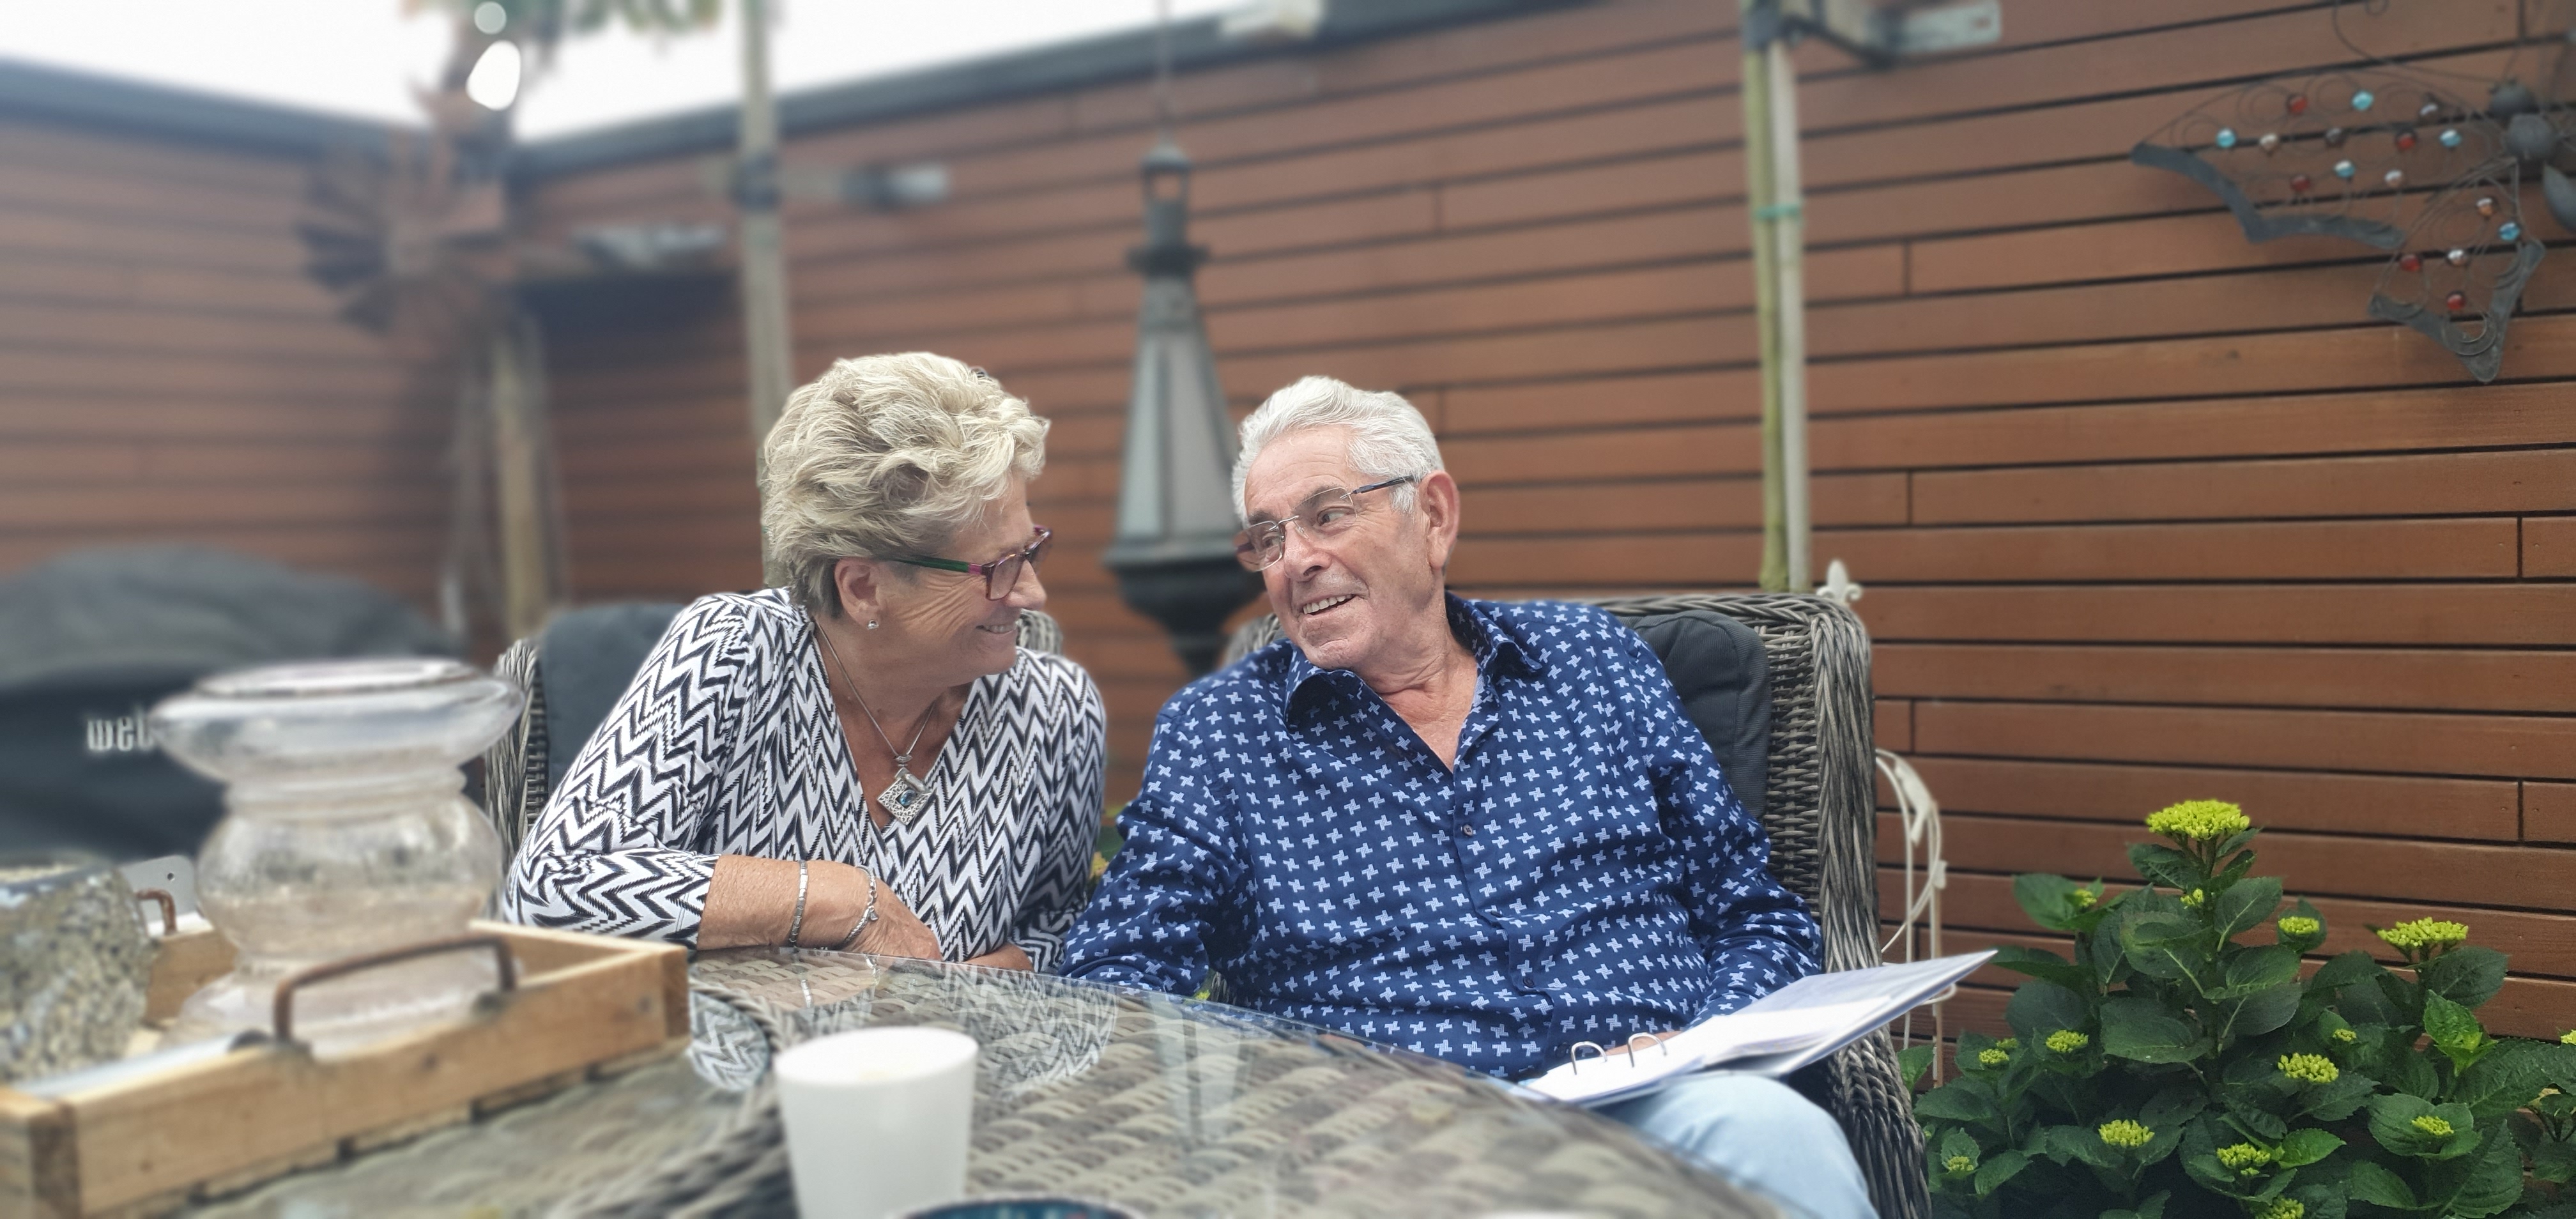 Meneer Alders met zijn vrouw in de tuin | CWZ Nijmegen